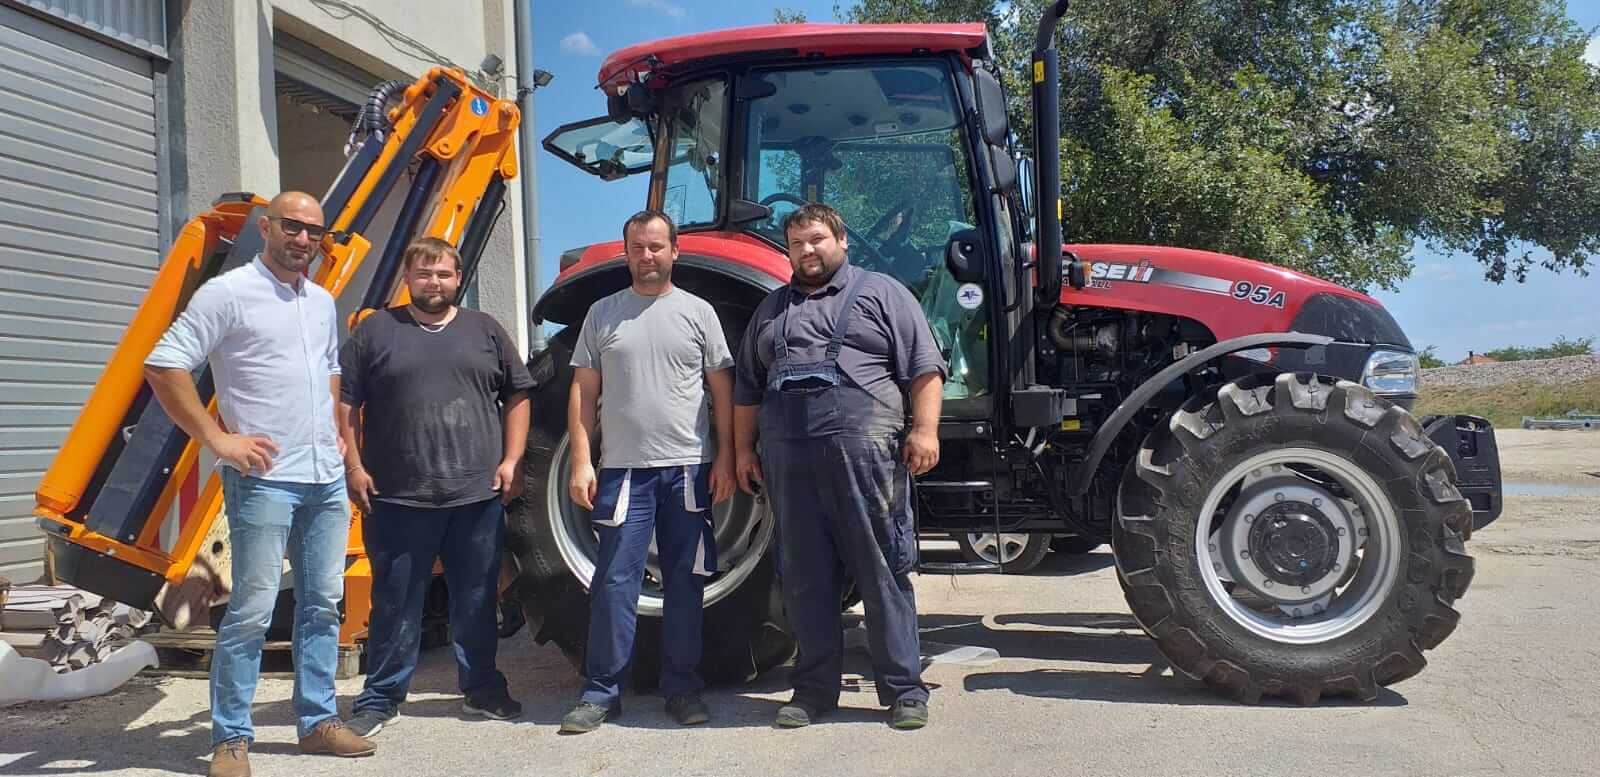 Čestitamo Komunalcu Benković na novom traktoru Case i profesionalnom malčeru Orsi. Želimo puno uspješnih radnih sati. Sa traktorom Case i malčerom Orsi imate dobitnu kombinaciju u održavanju zelenih površina.